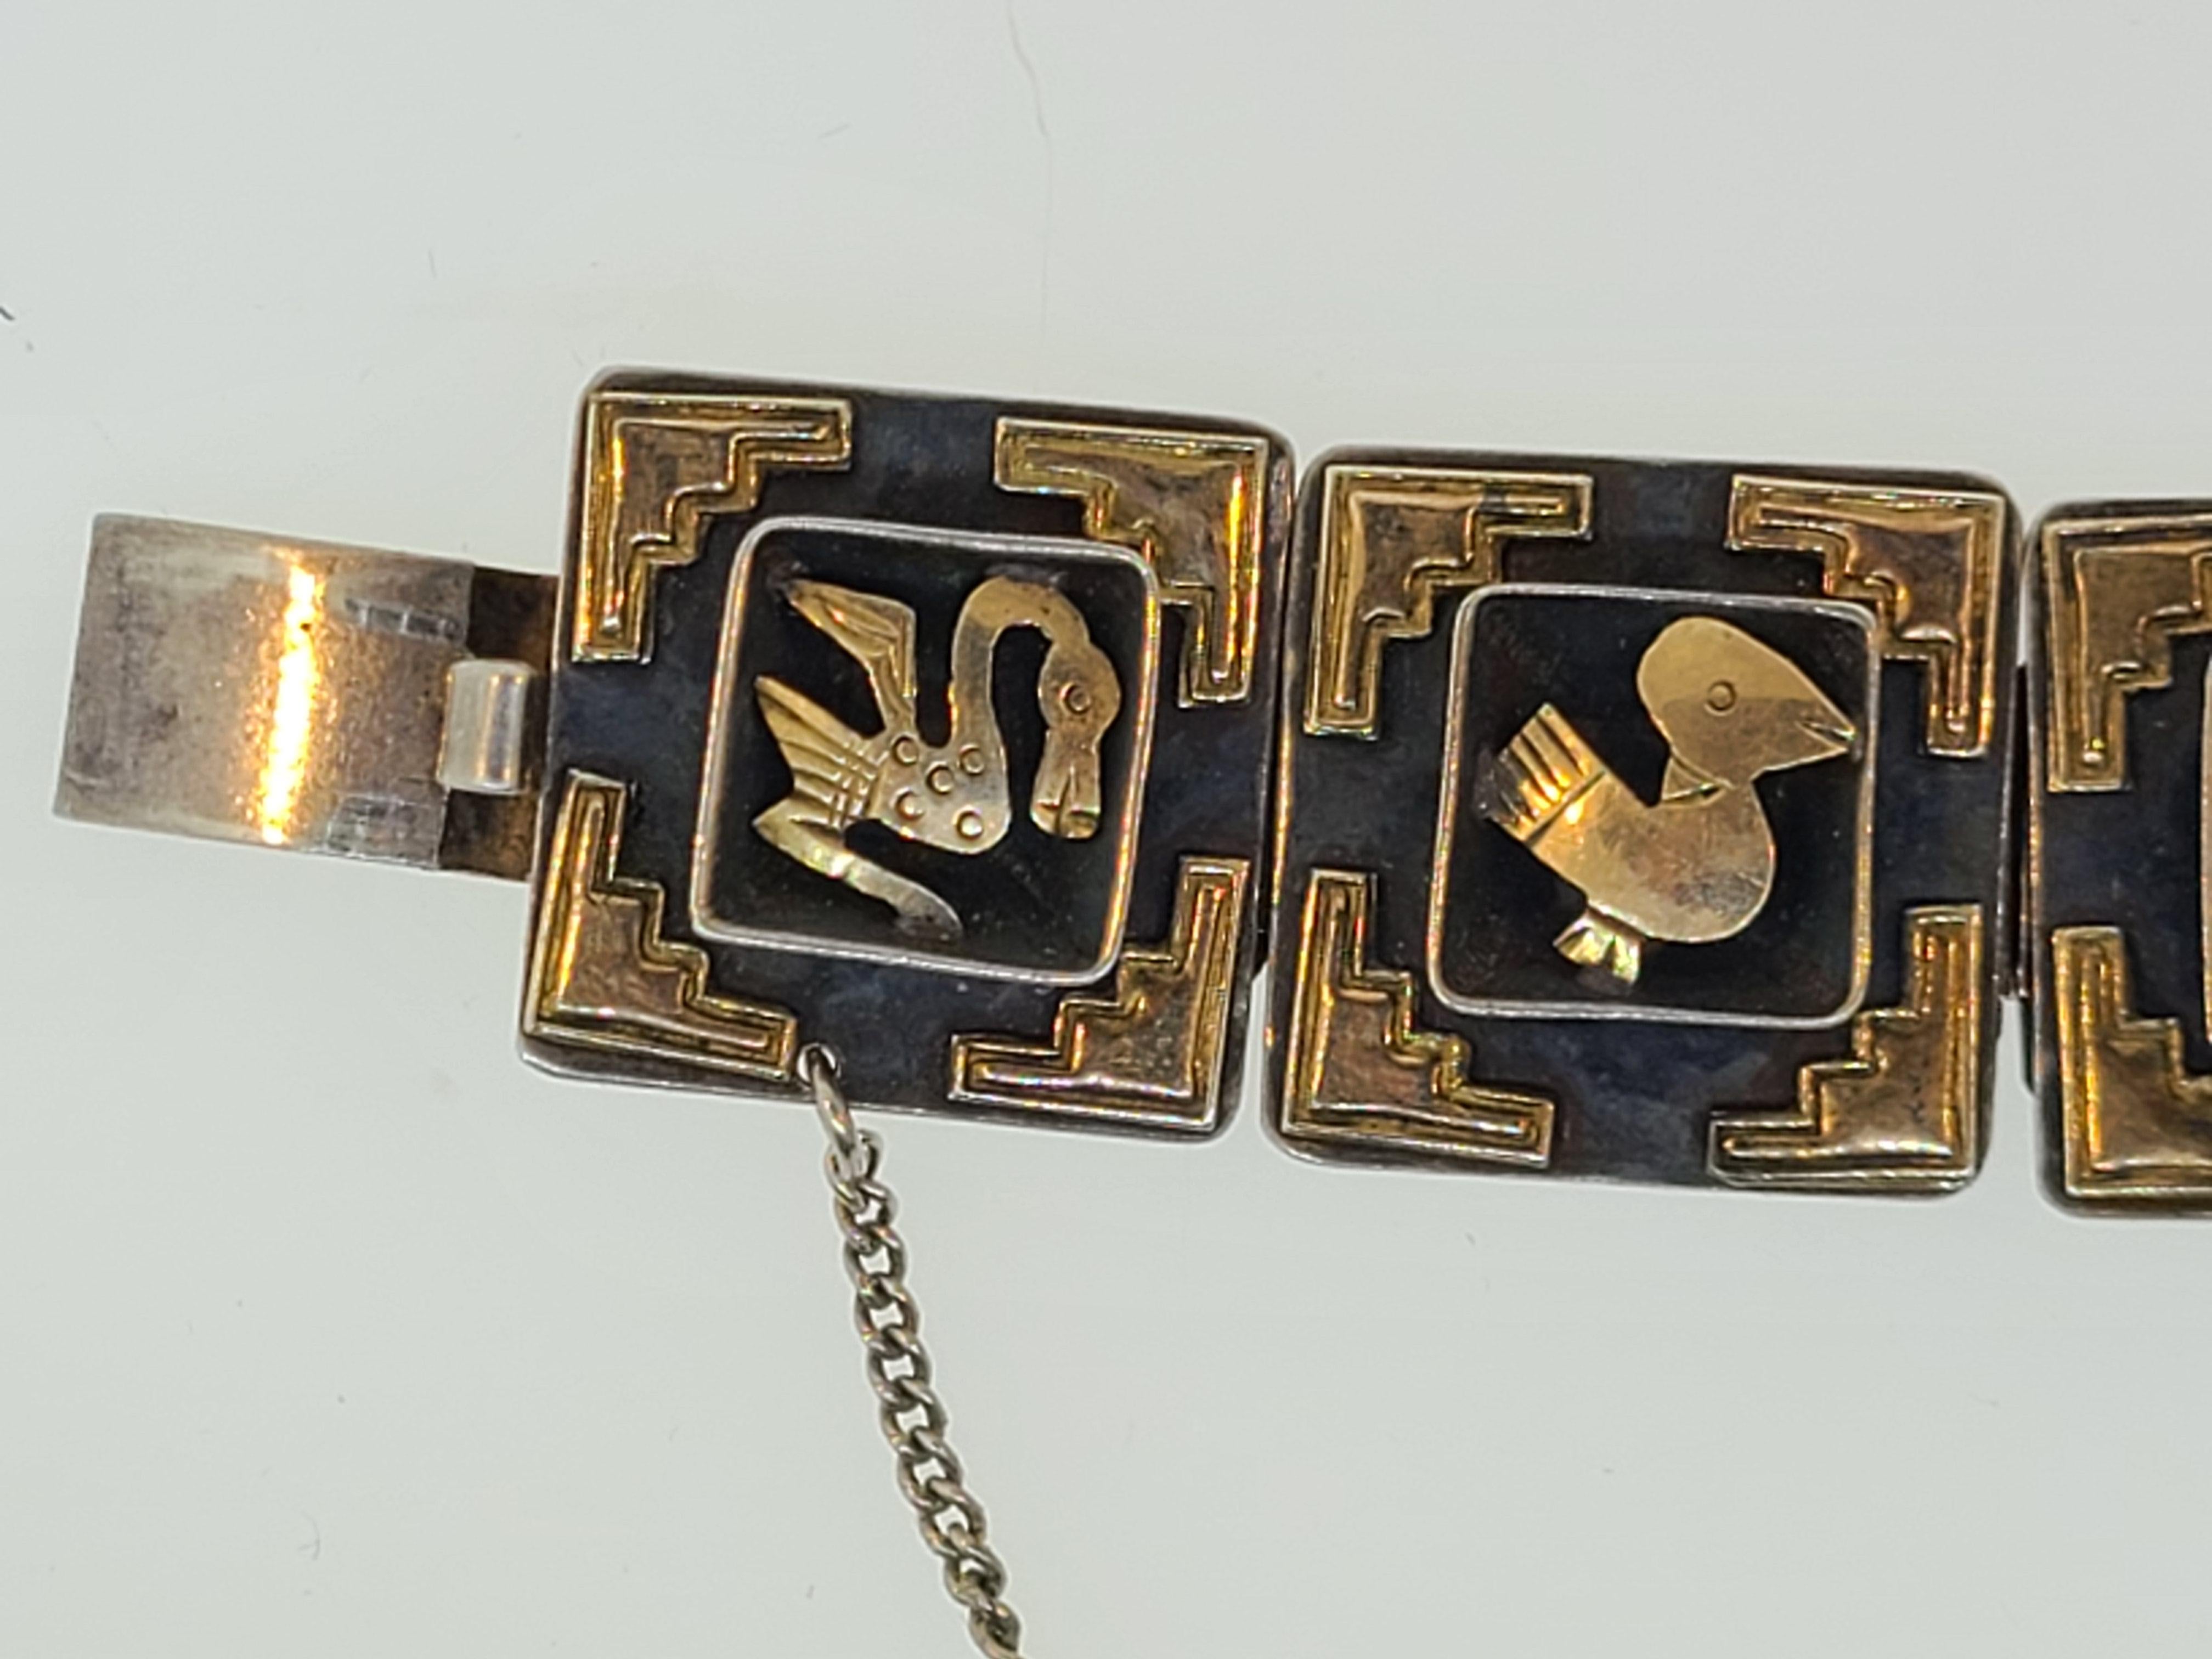 Dieses aus einem Nachlass gefundene Armband aus den 1940er Jahren ist aus Sterlingsilber gefertigt und mit Inka-Motiven aus 18 Karat Gelbgold verziert. Dieses in Peru gefertigte Armband mit der Signatur Cuzco ist ein wunderbares Beispiel für